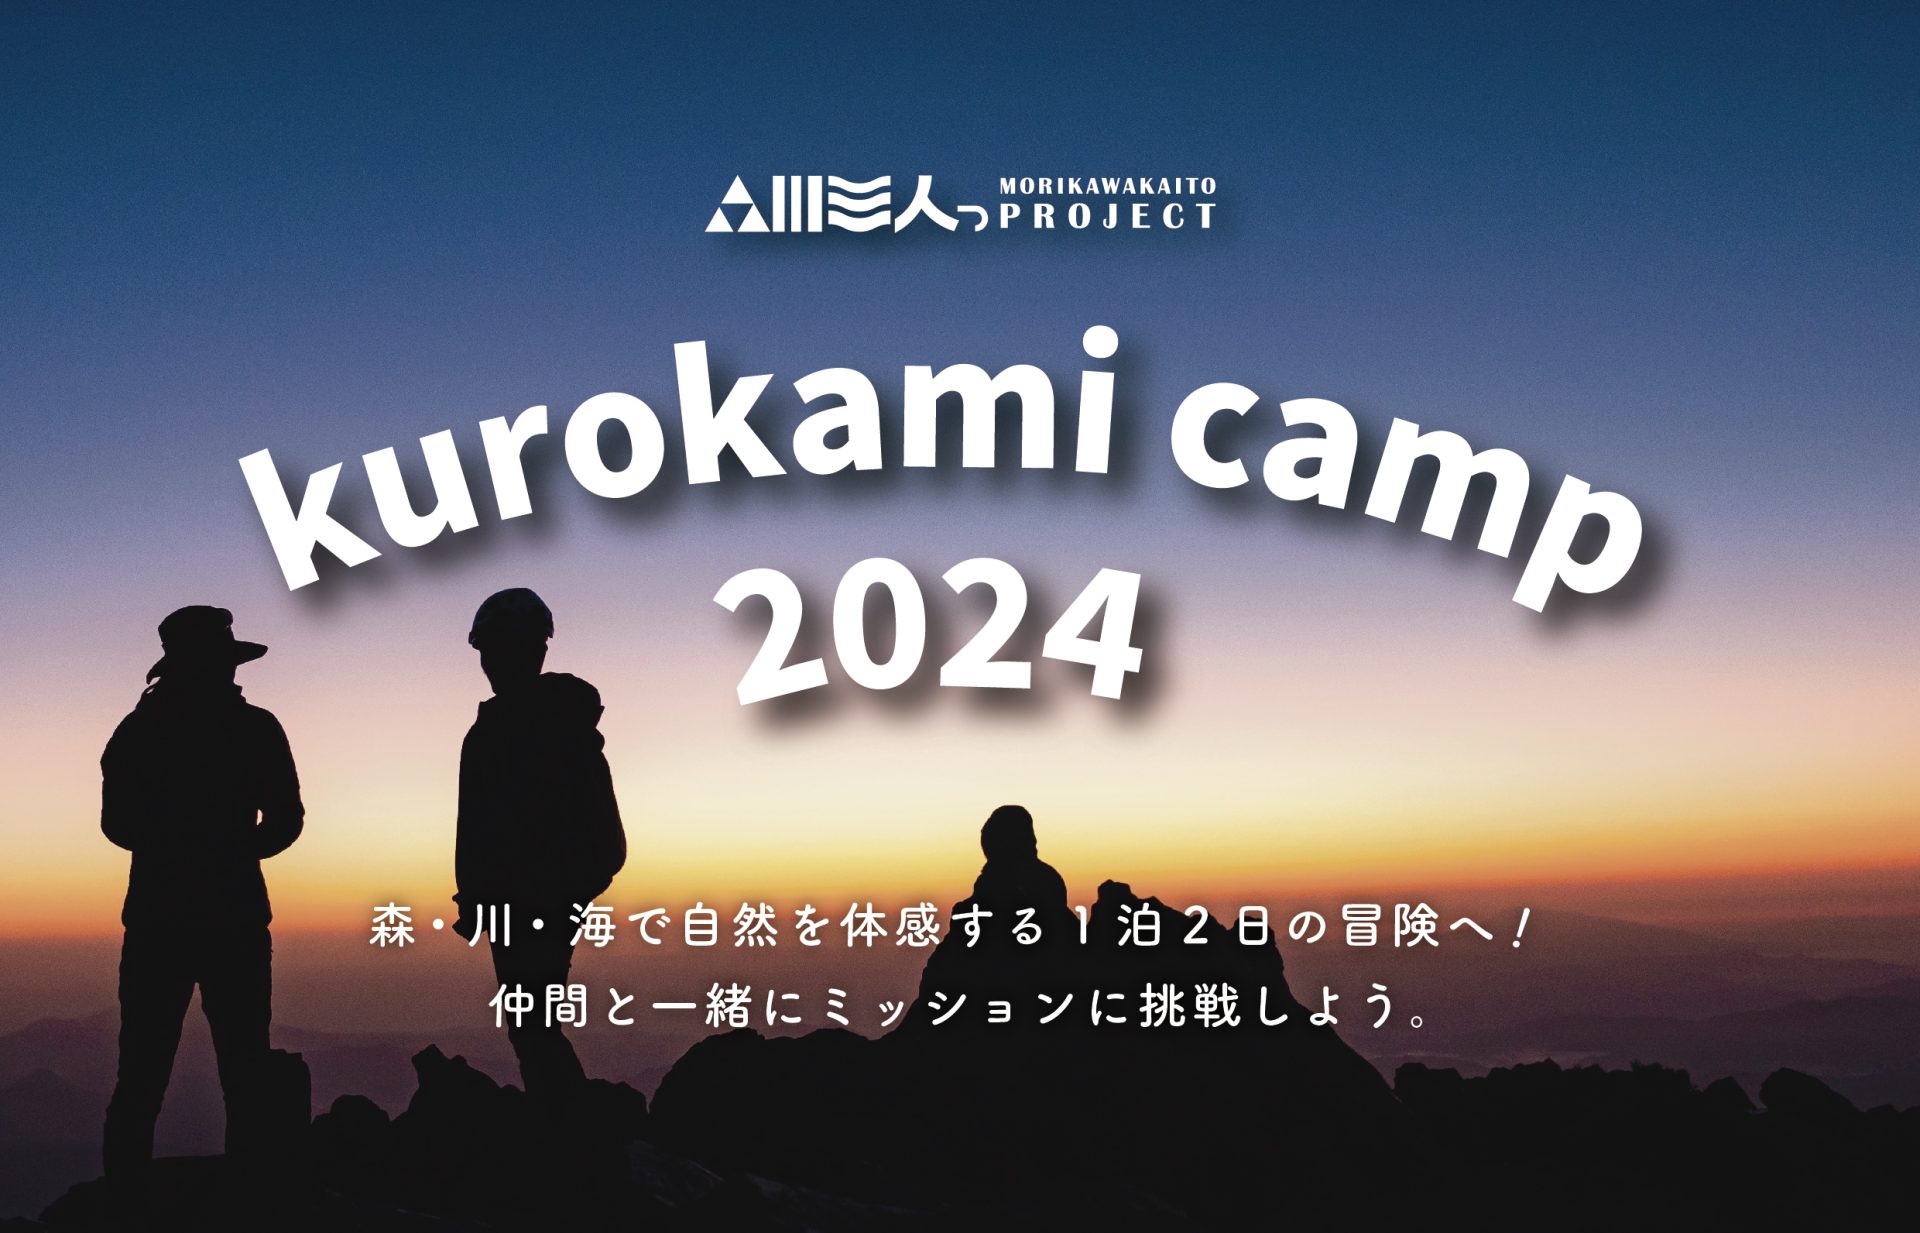 「森川海人っプロジェクト kurokami camp 2024」を開催しますのサムネイル